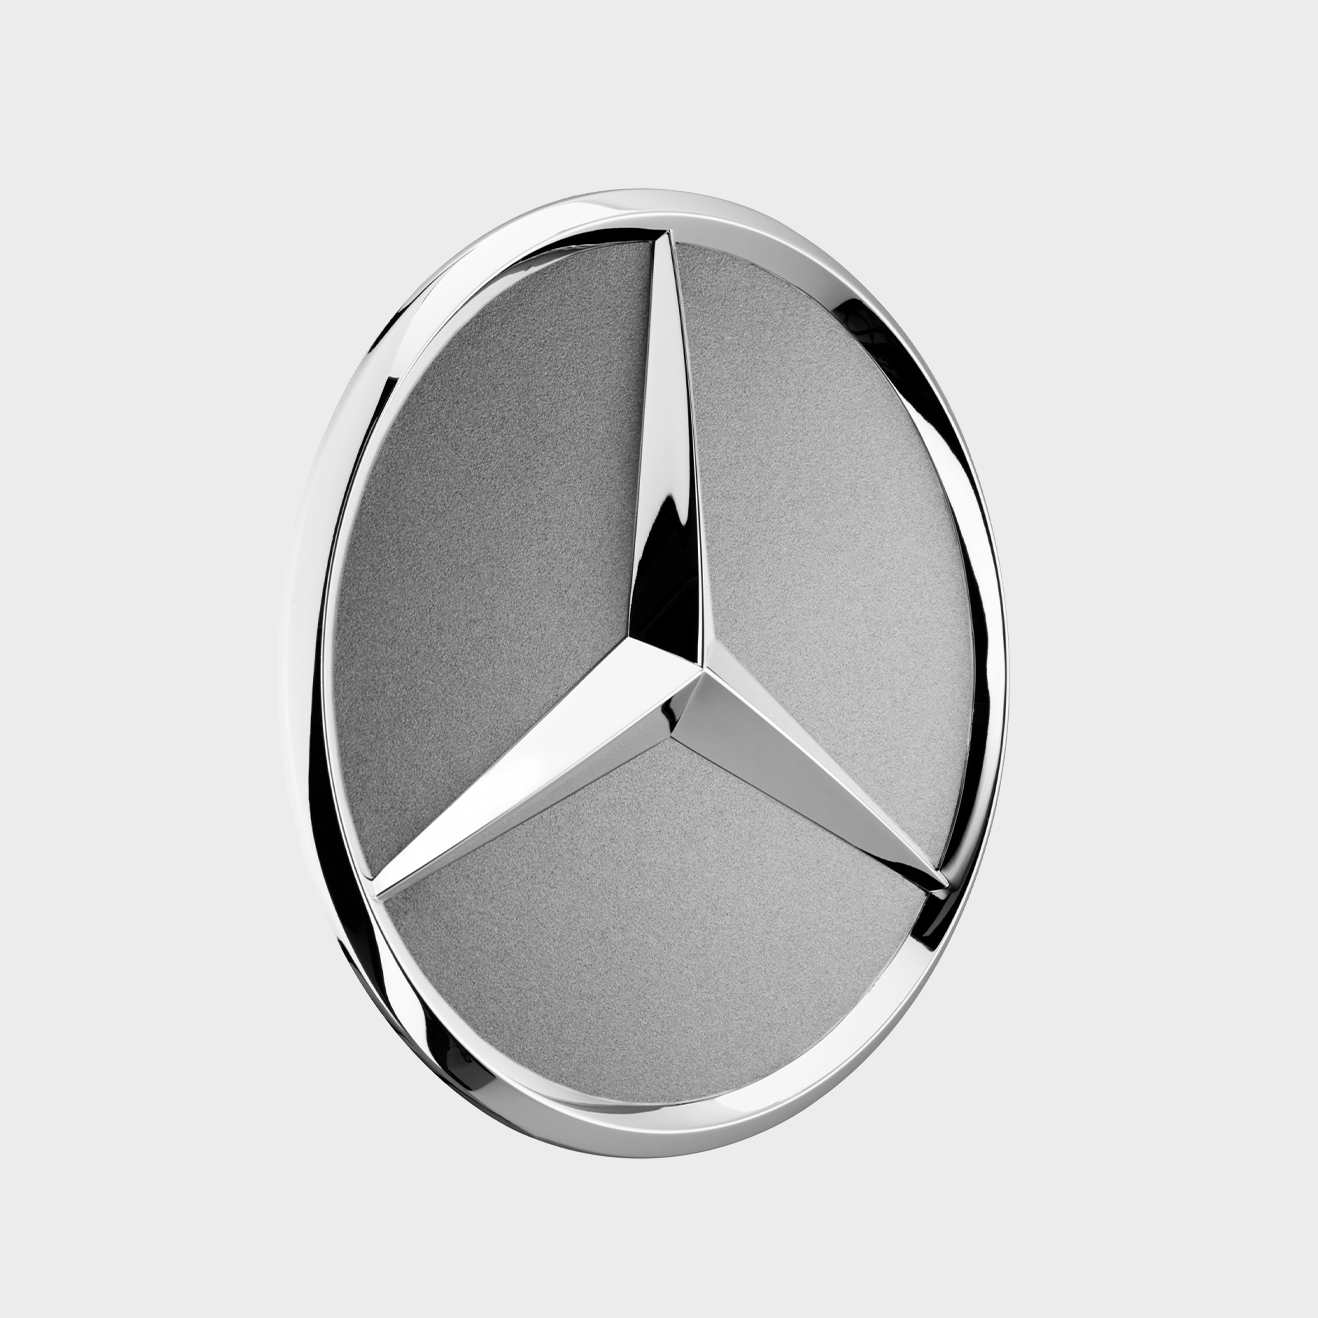 Mercedes-Benz Radnabenabdeckung, Stern erhaben